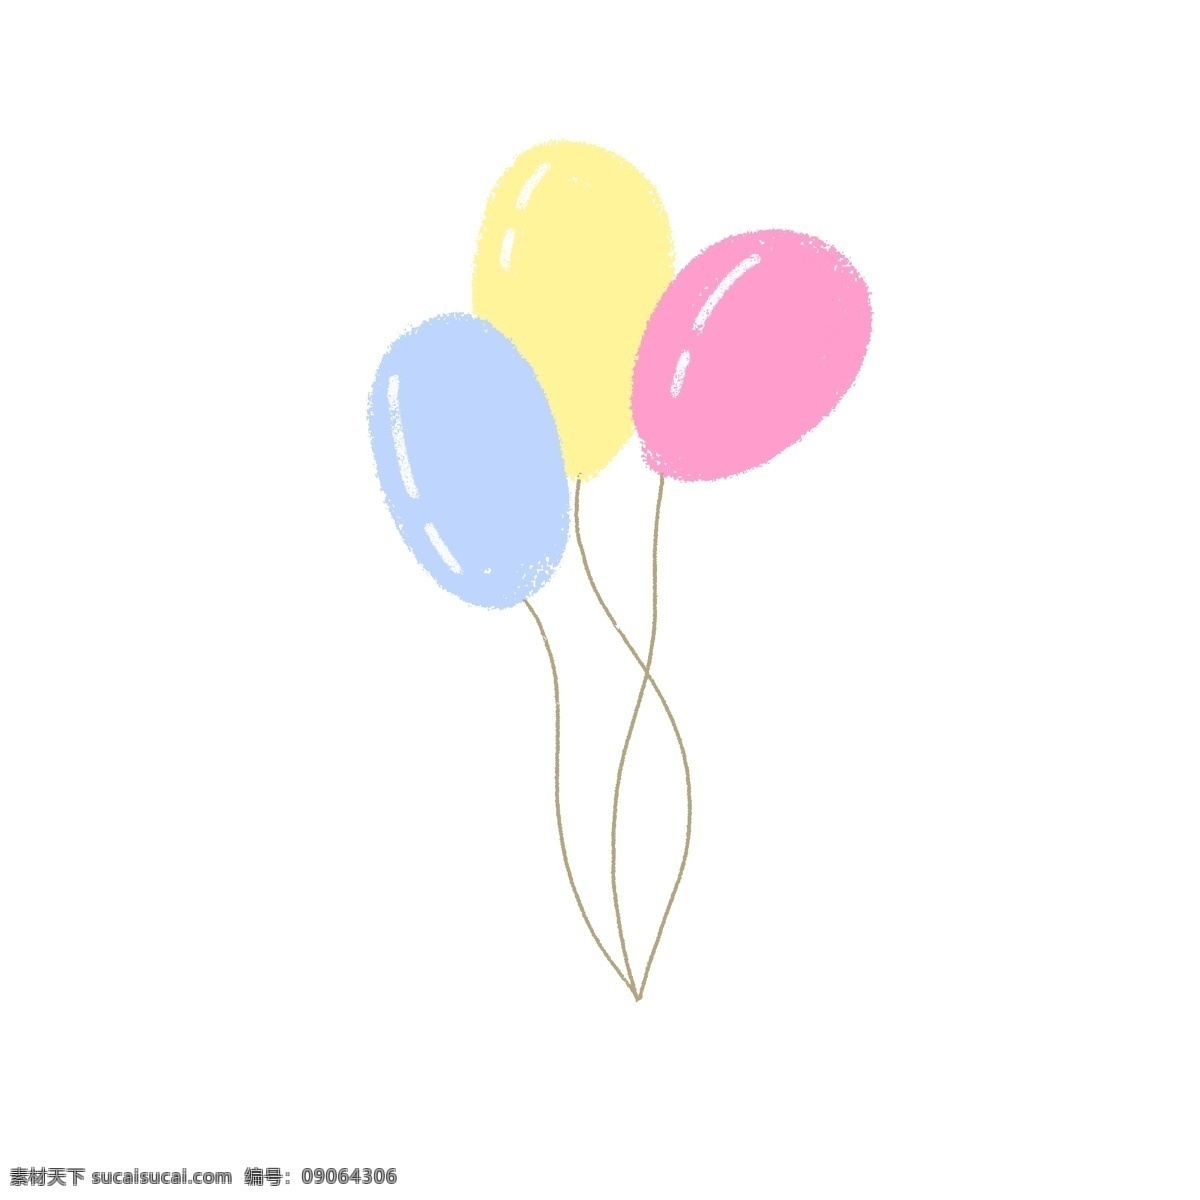 聚会 彩色 气球 生日 红黄蓝 圆形 插画 手绘 免抠图 小清新 卡通 简笔画